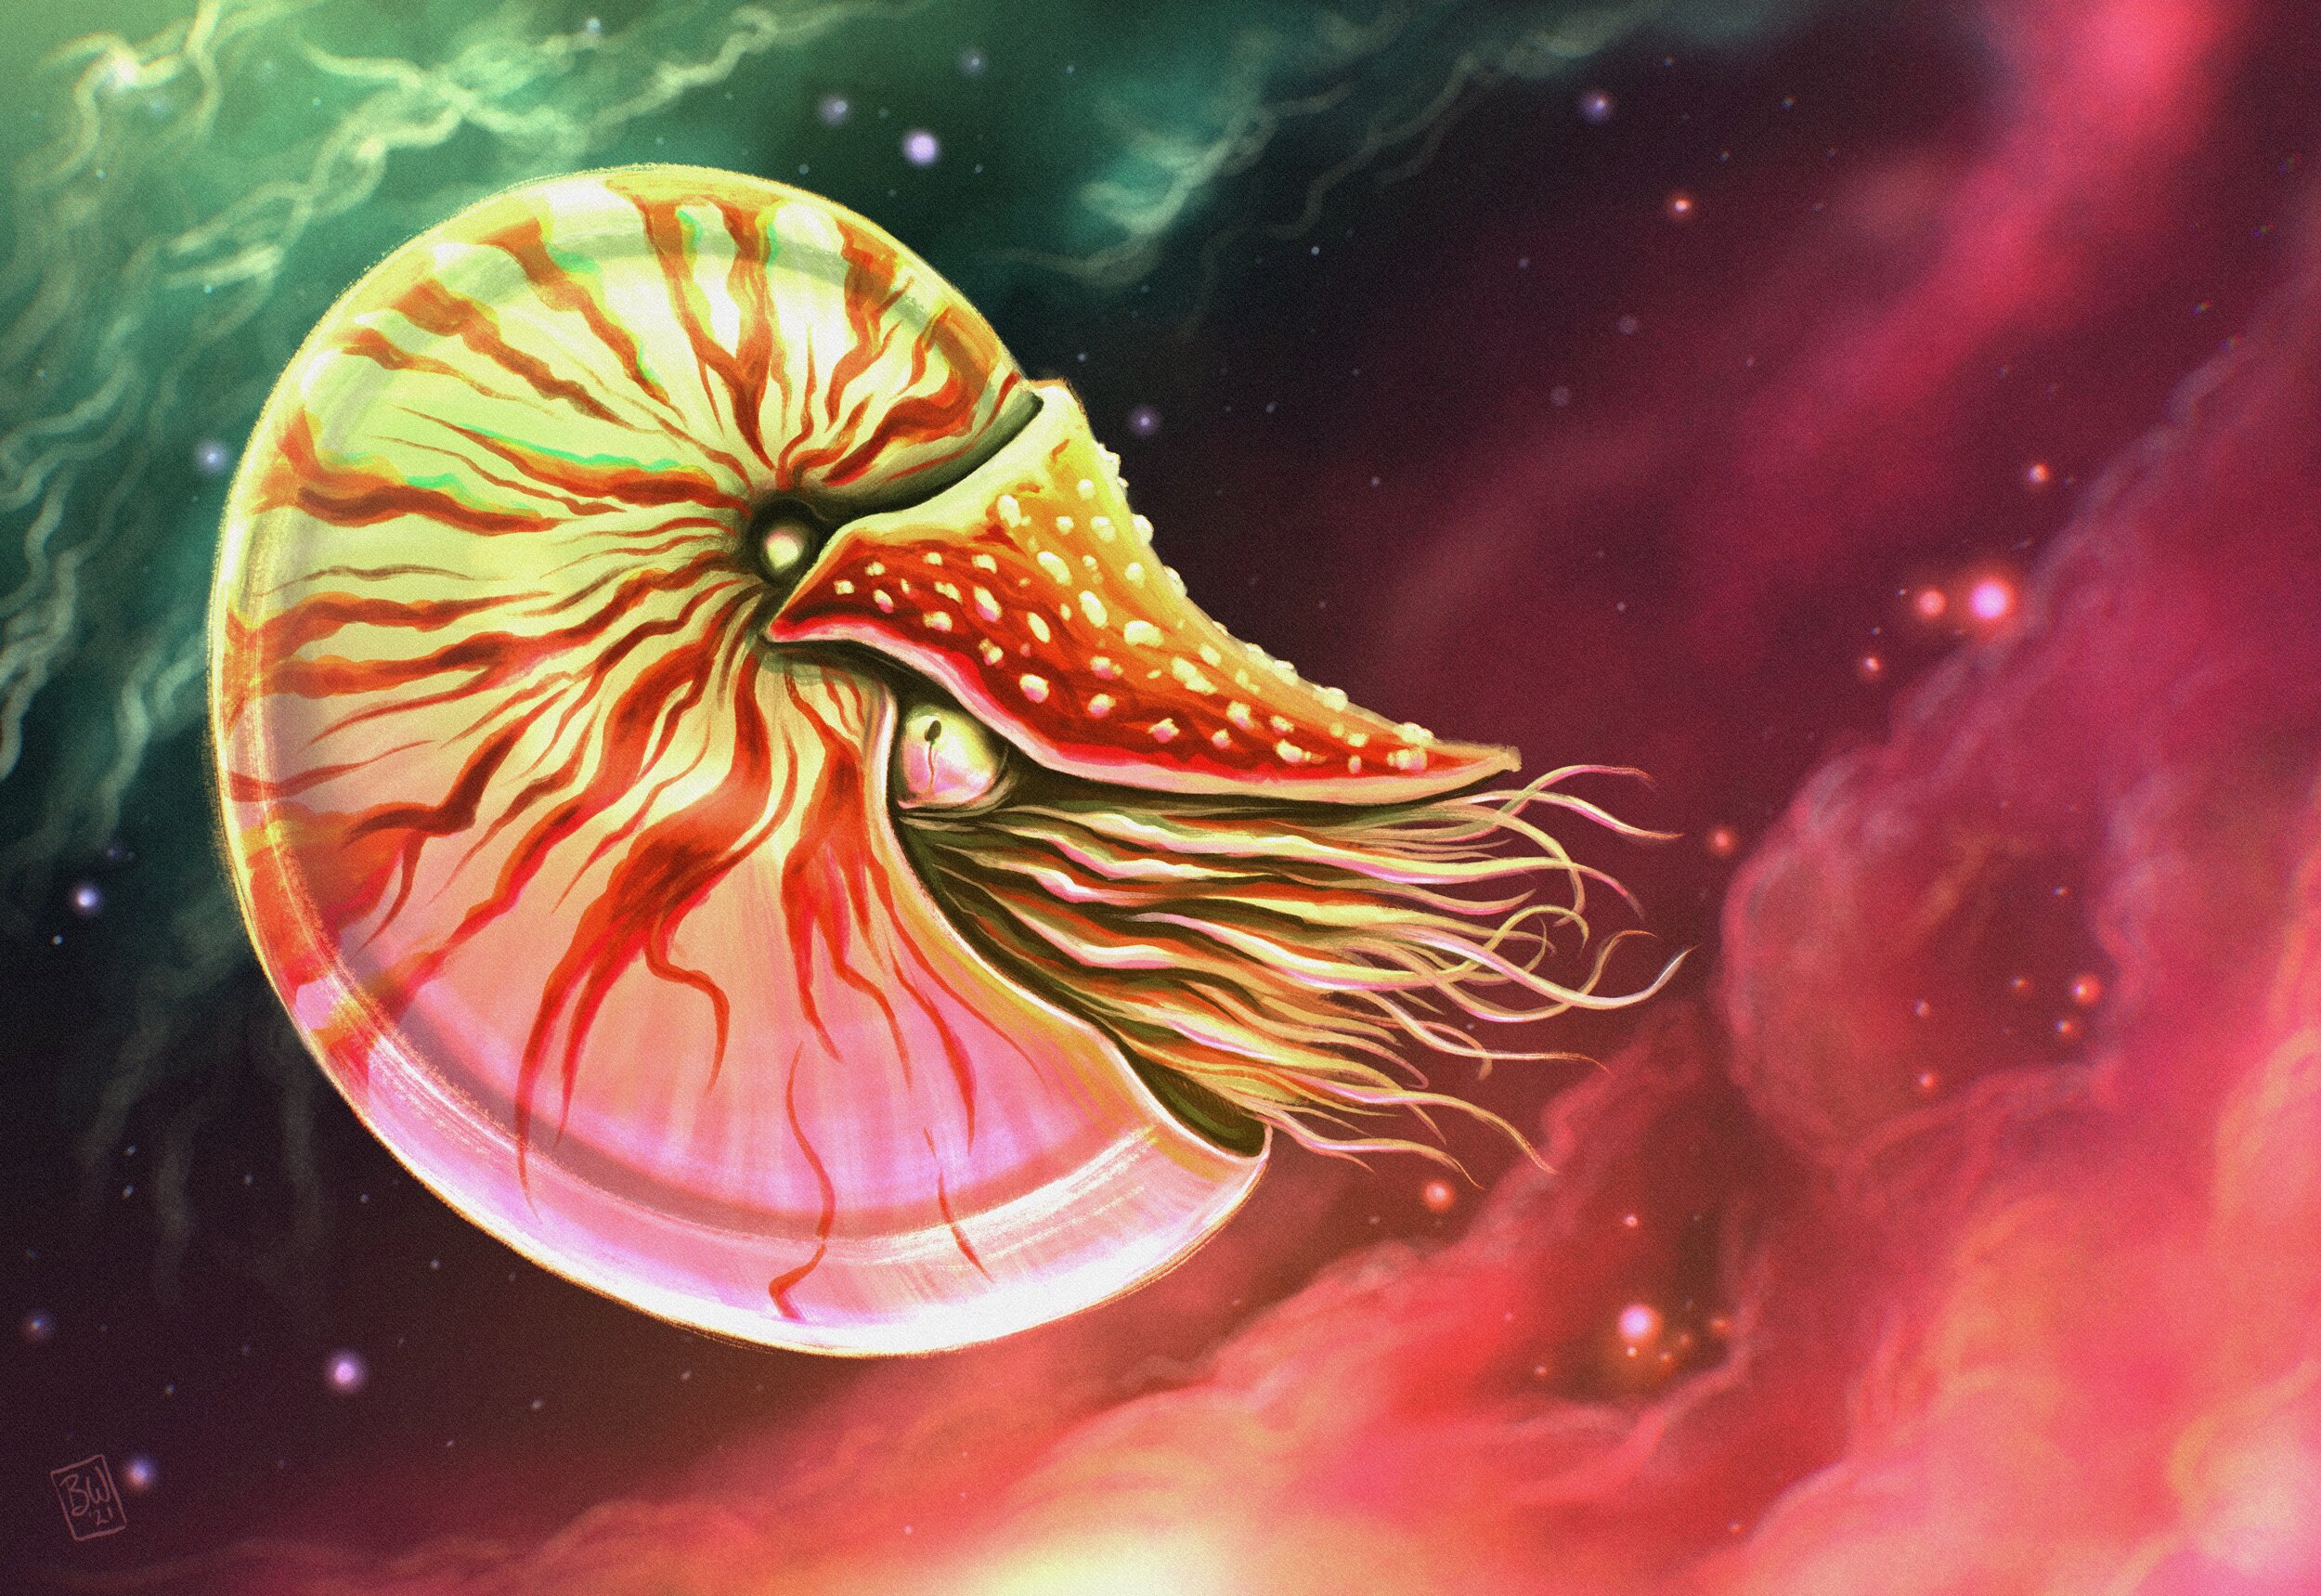 Cosmic Nautilus